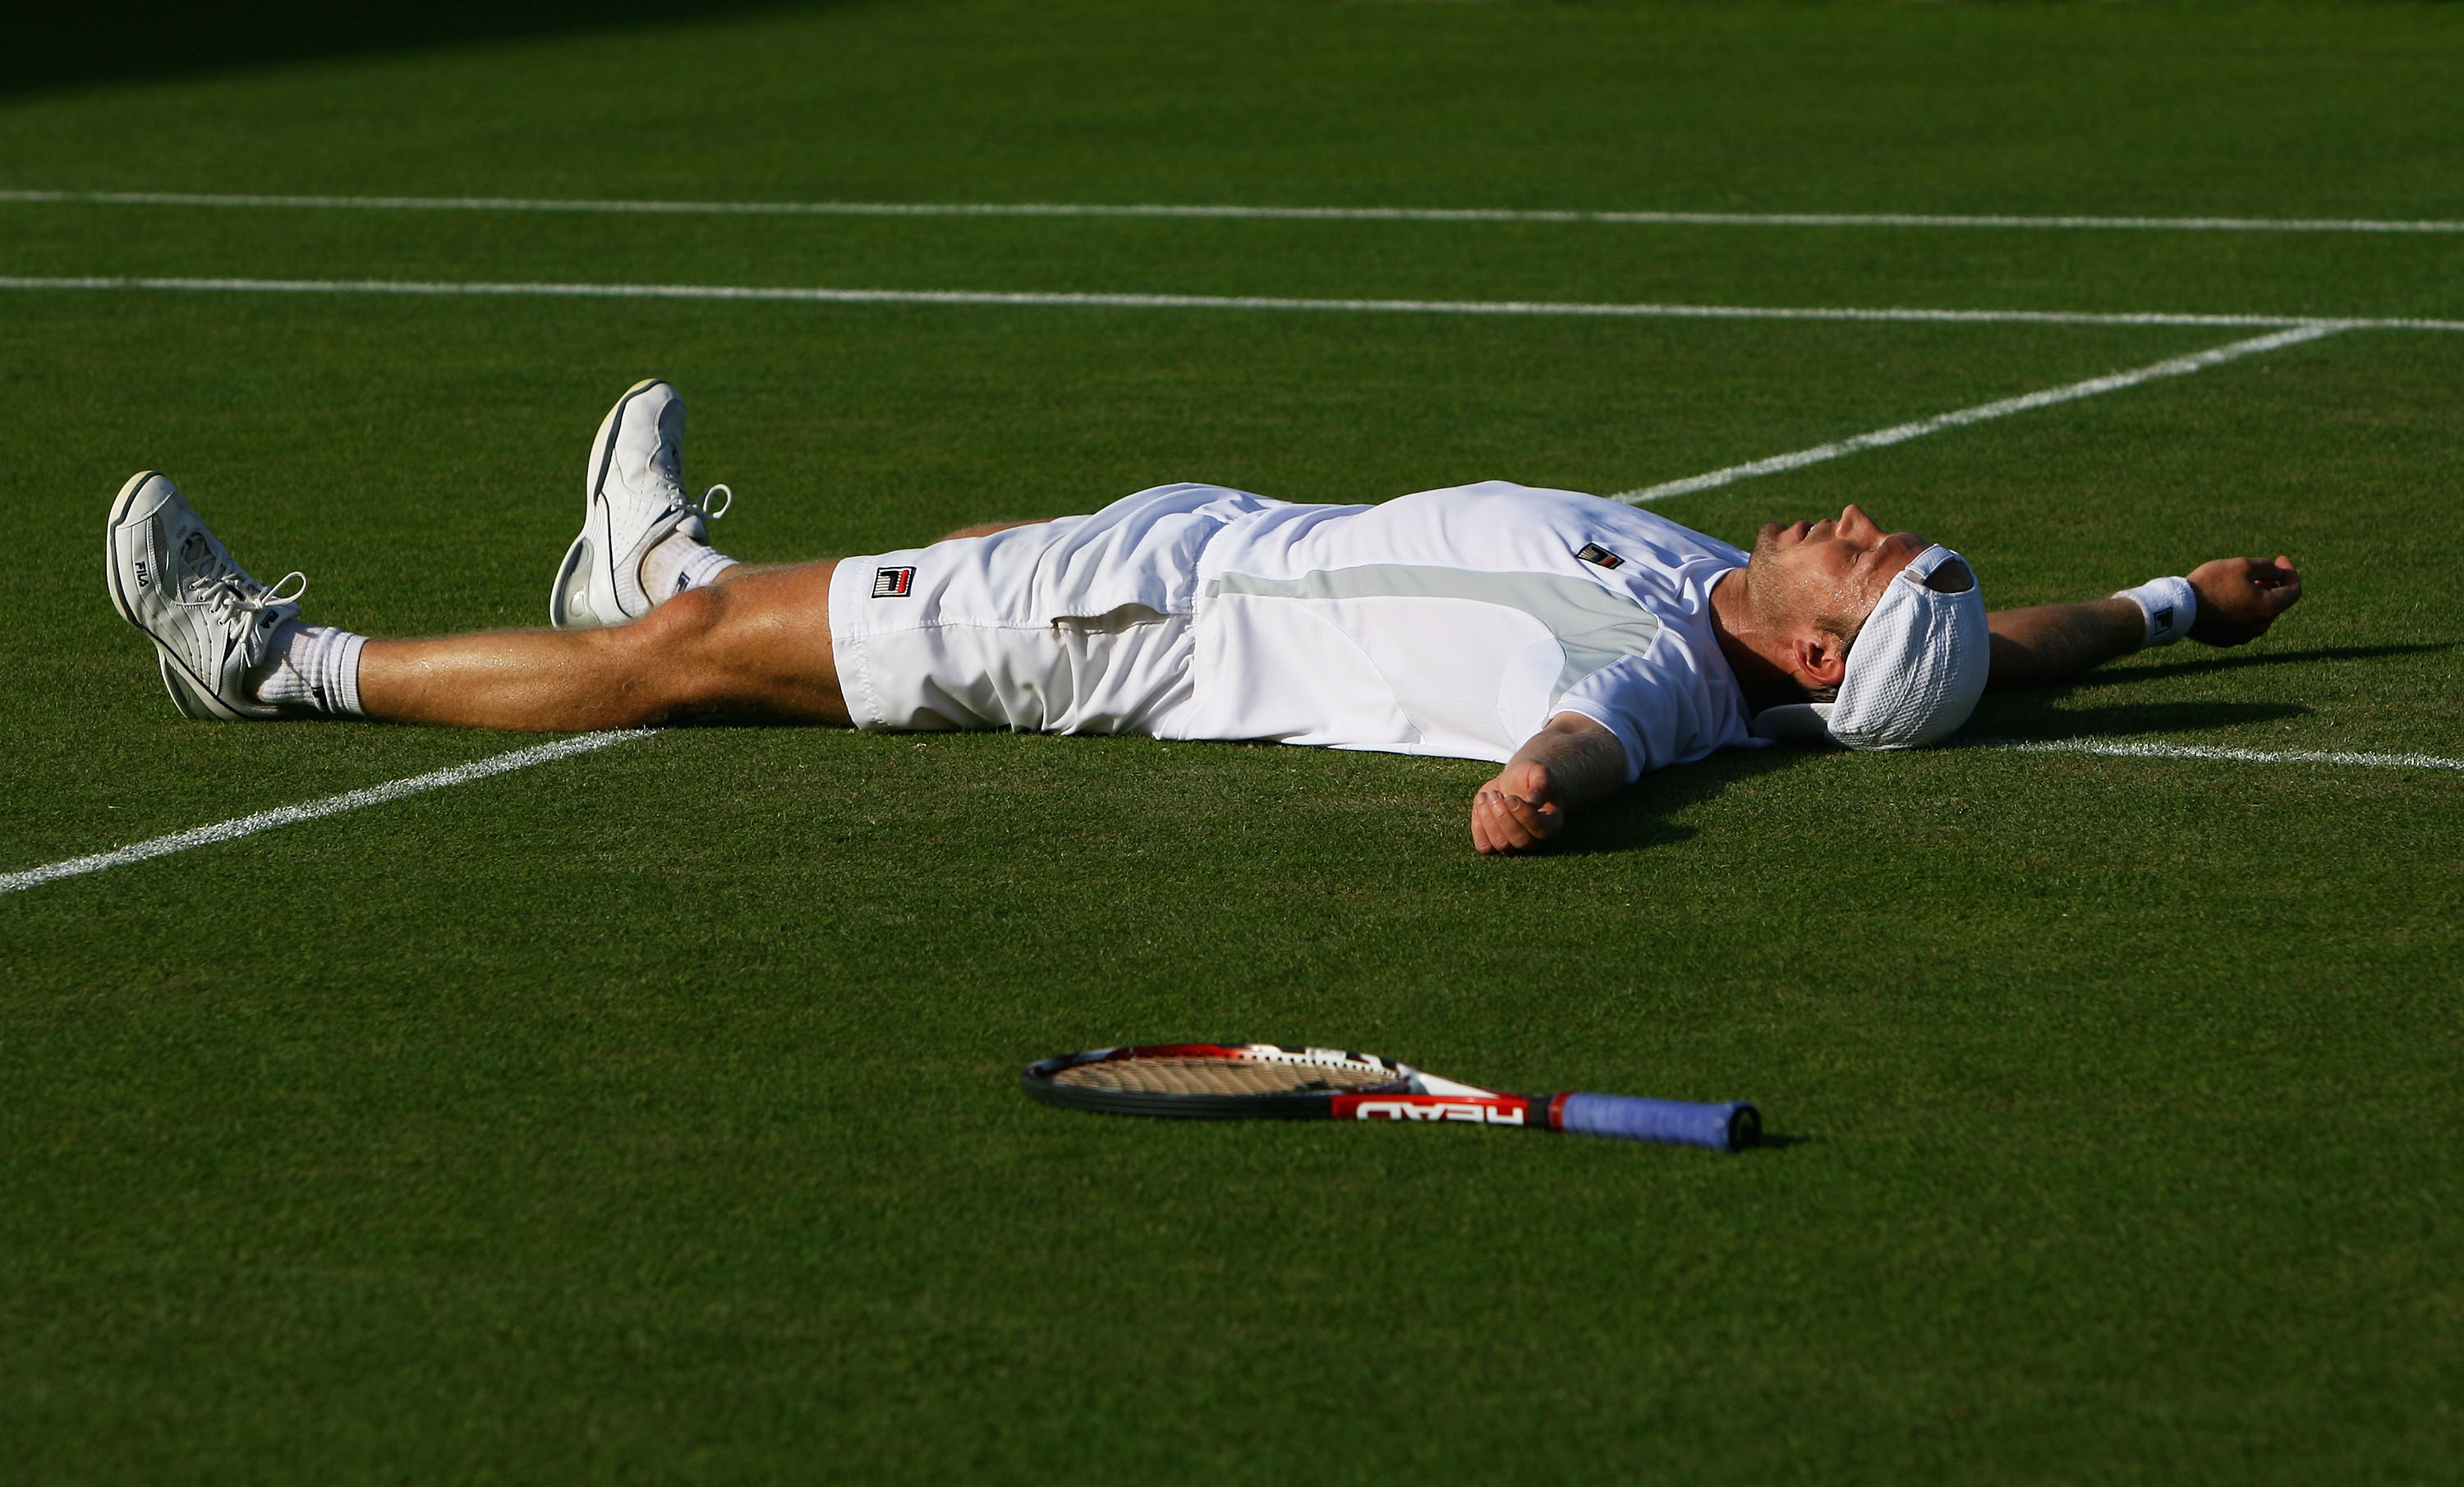 Einziges Aufeinandertreffen: Nach einem hart umkämpften Match gegen Tipsarevic lies Rainer Schüttler sich 2008 auf den Rasen in Wimbledon fallen.